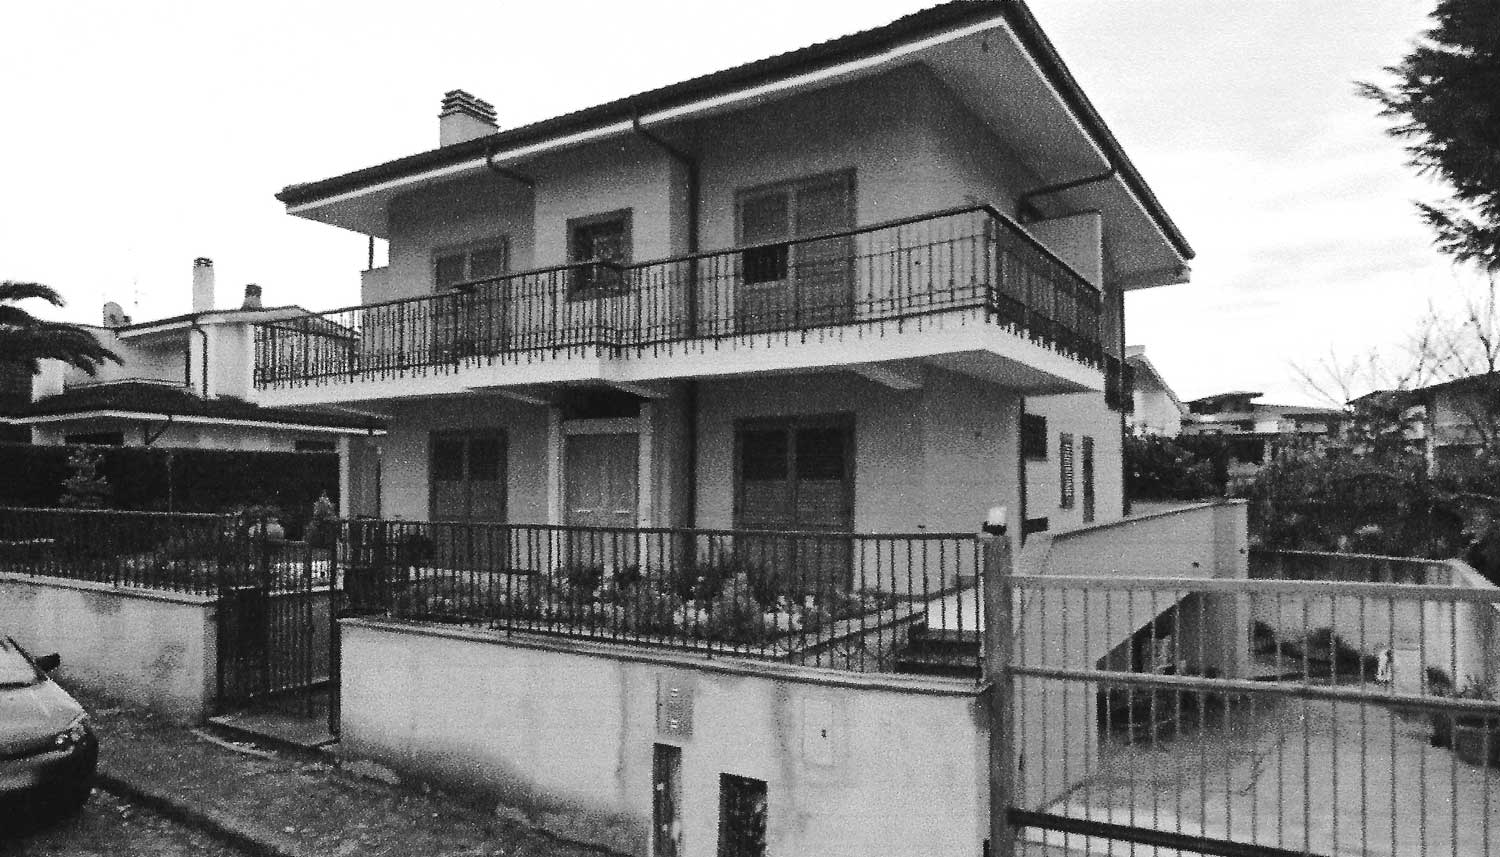 19 - Edificio unifamiliare in via del Quirinale, Taurianova (RC) - Vista esterna